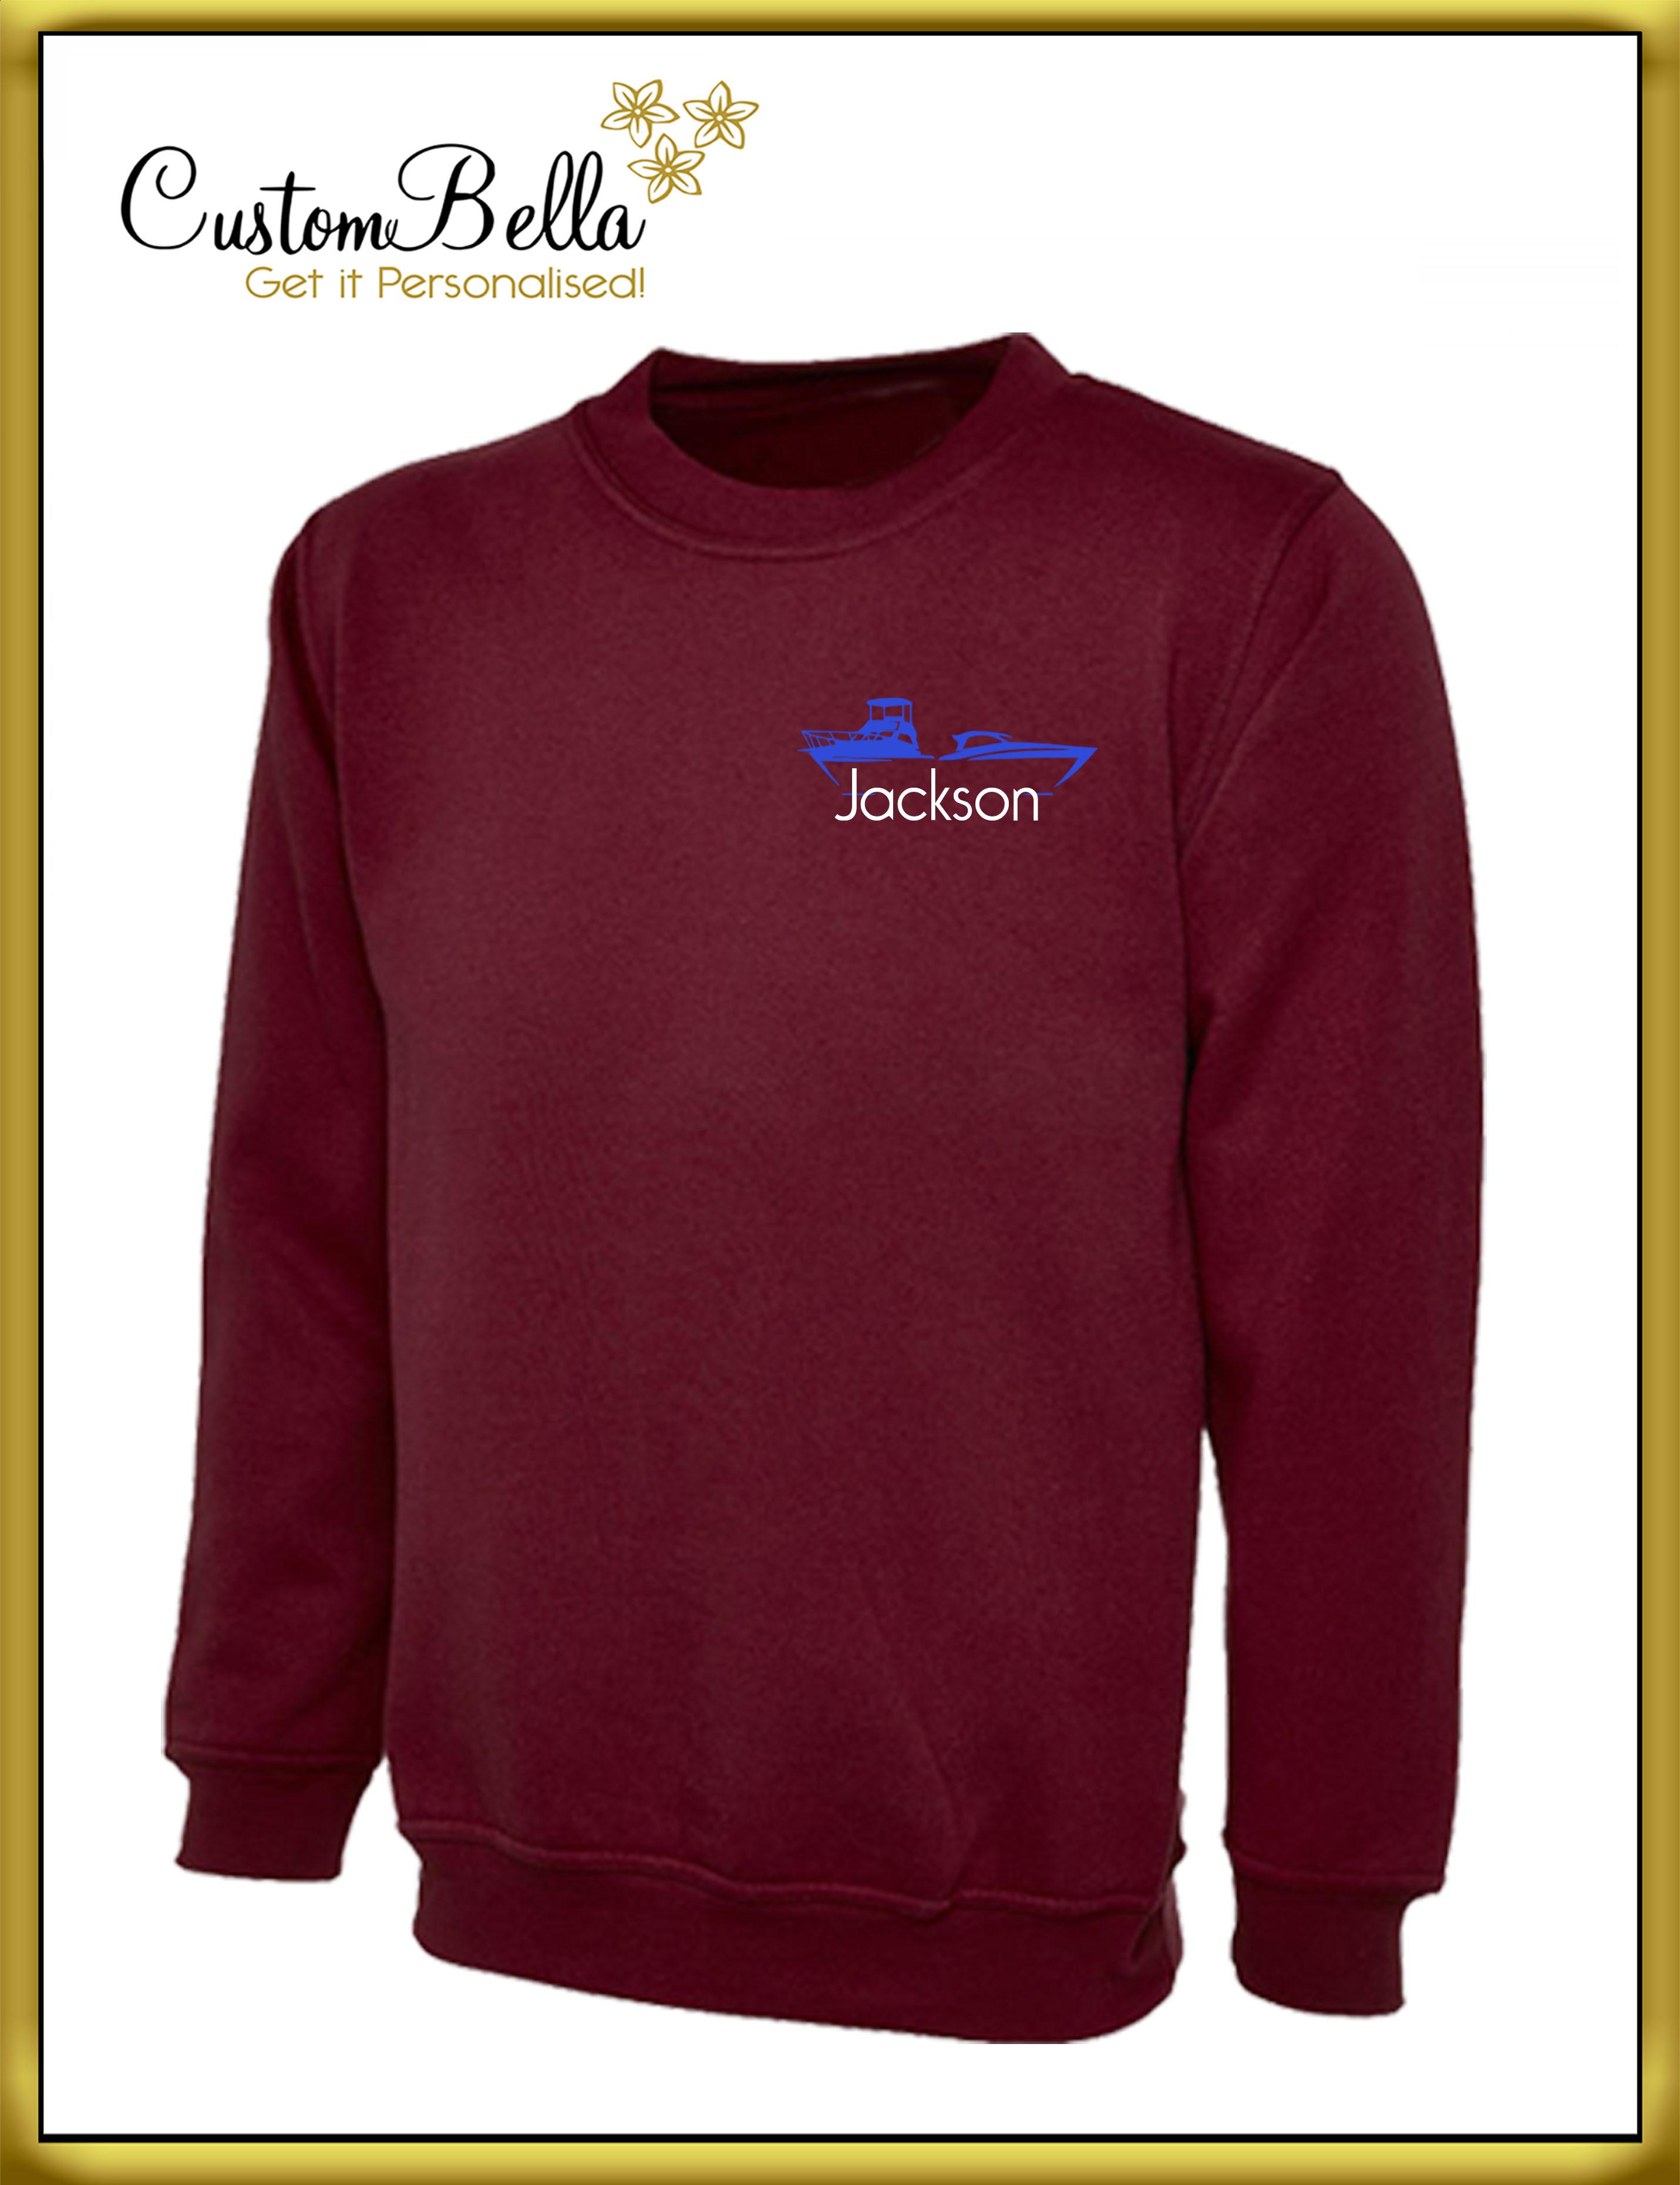 Personalised jumper printed UK maroon